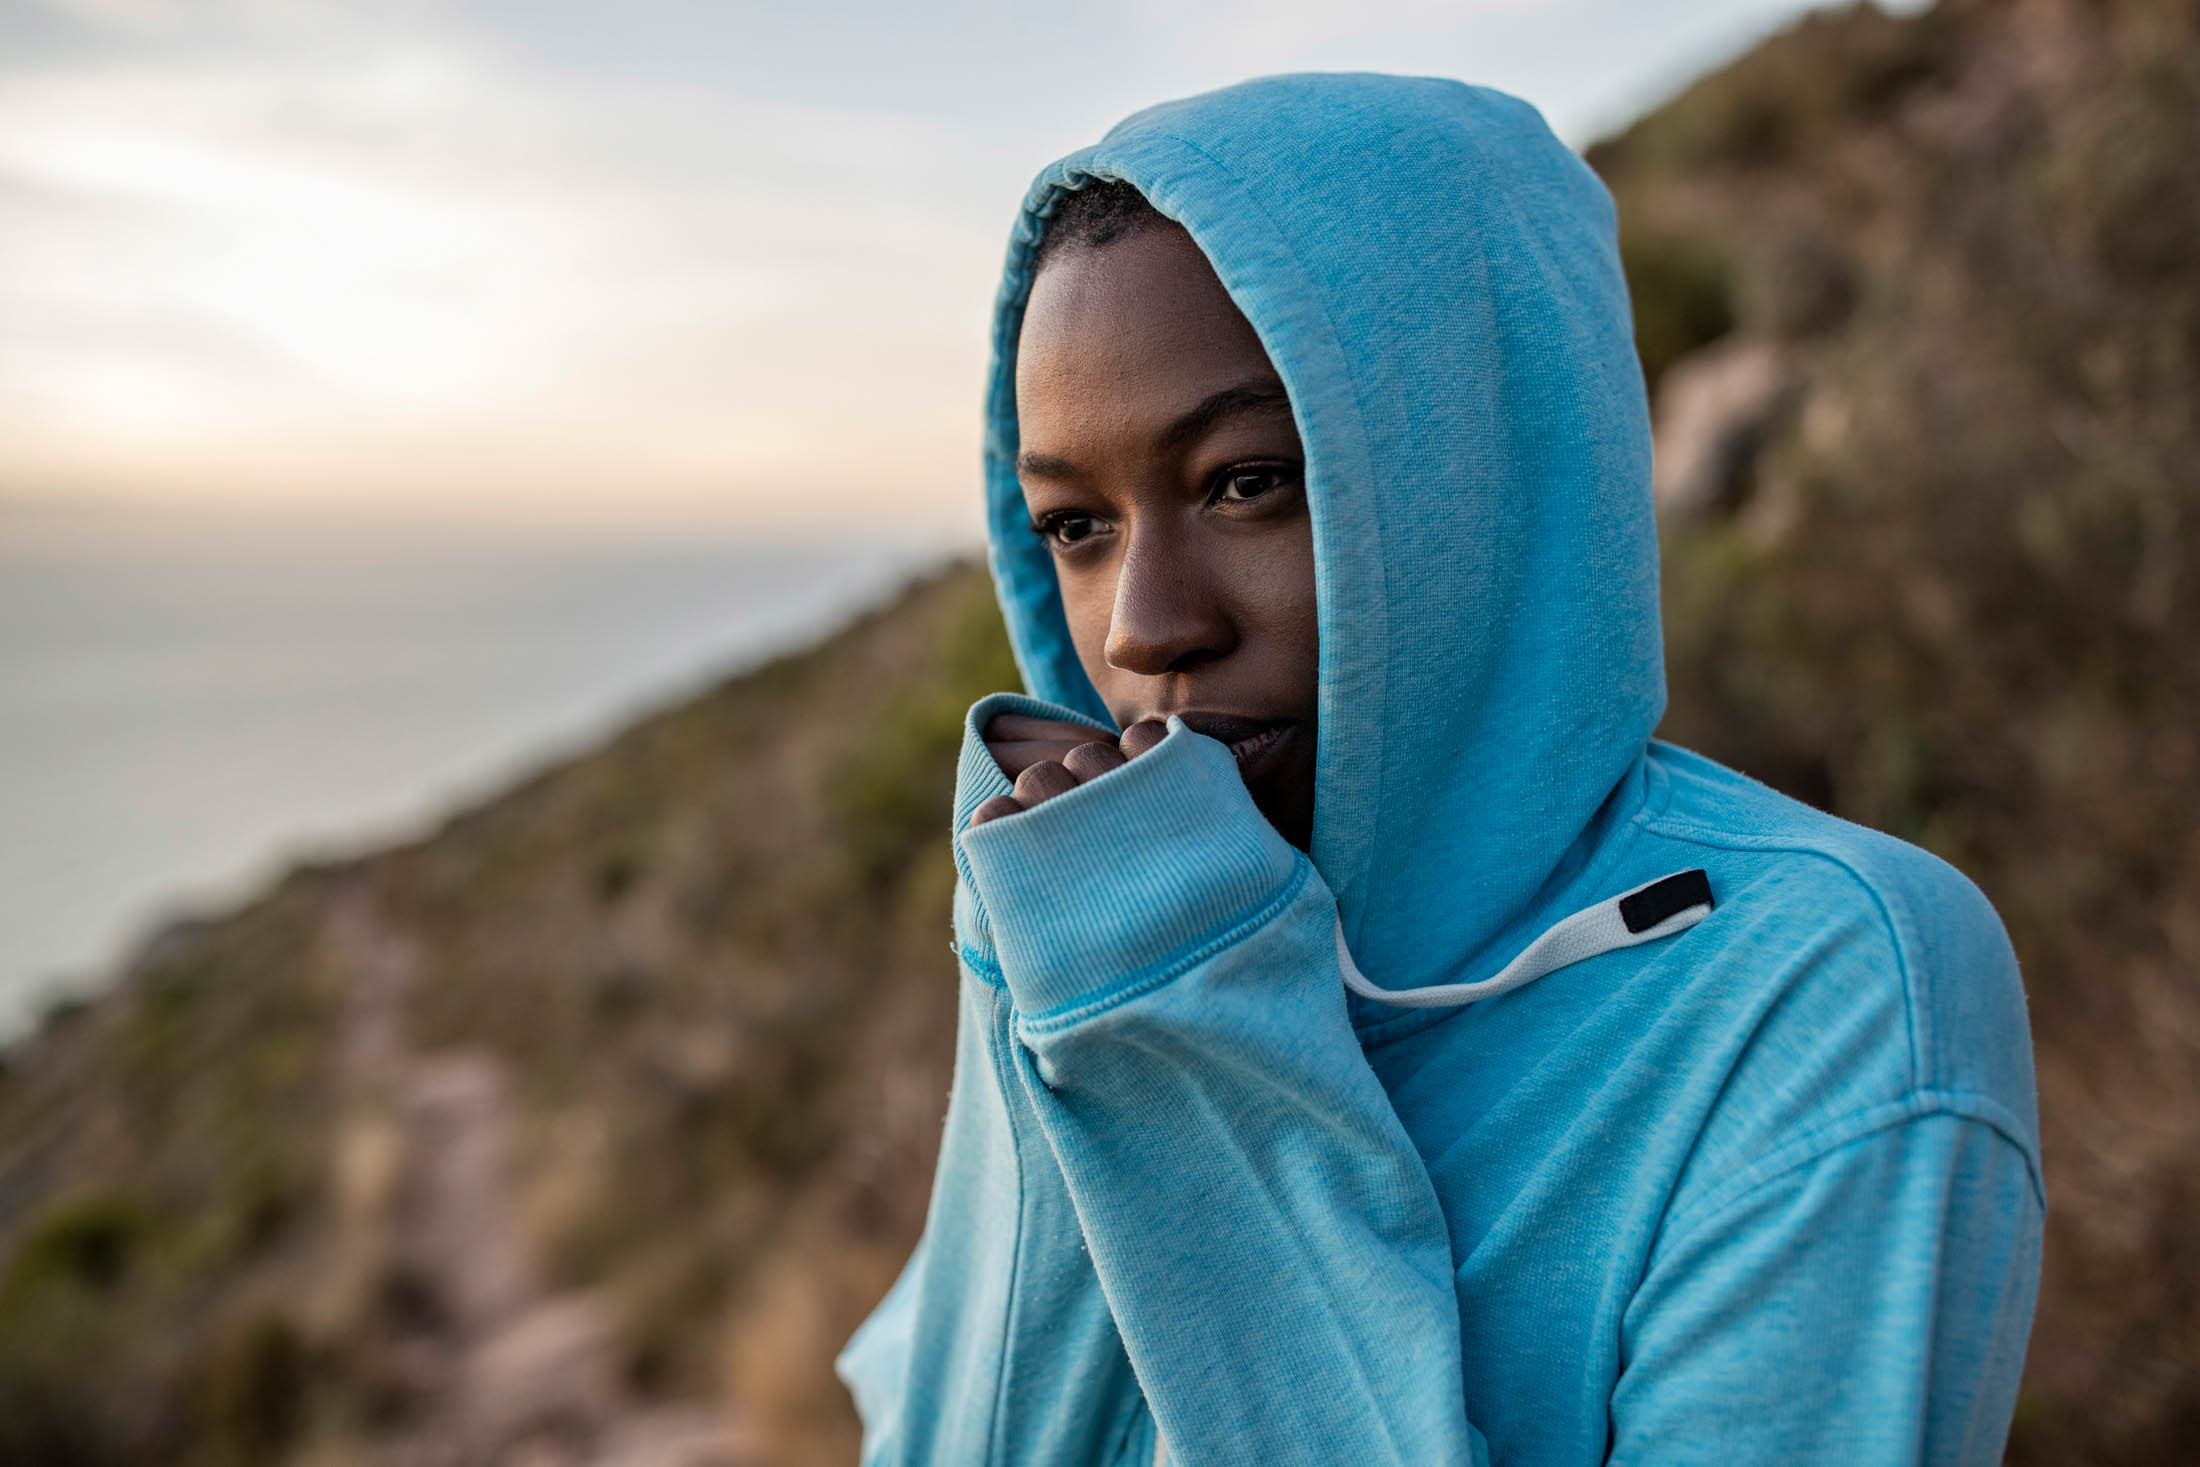 Eine Person in einem blauen Kapuzenpullover steht auf einem Berg und sieht nachdenklich aus. Im Hintergrund ist das Meer unscharf. Der Kapuzenpullover bedeckt teilweise ihren Mund. © Fotografie Tomas Rodriguez